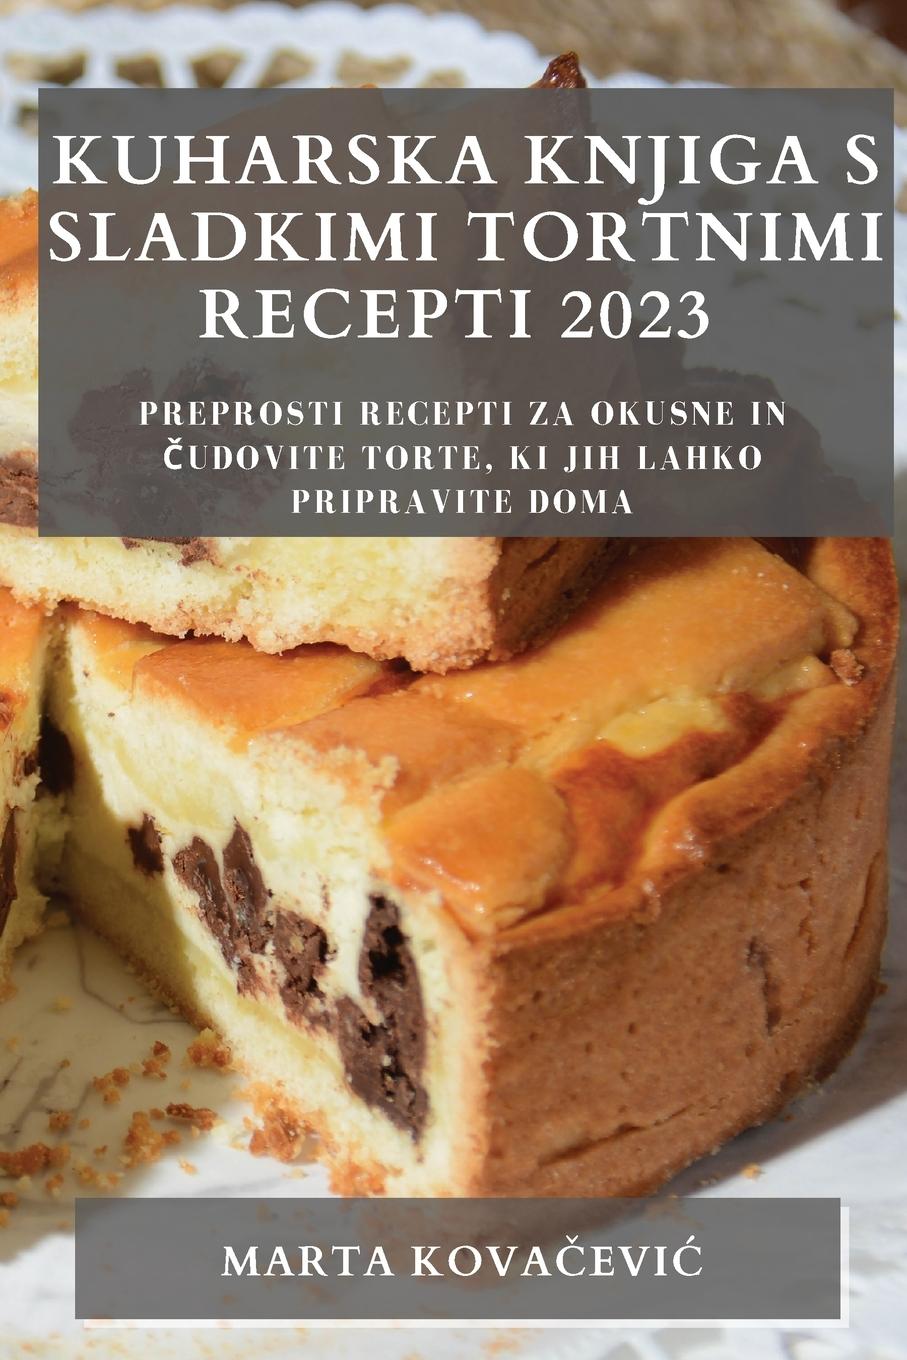 Kniha Kuharska knjiga s sladkimi  tortnimi recepti 2023 